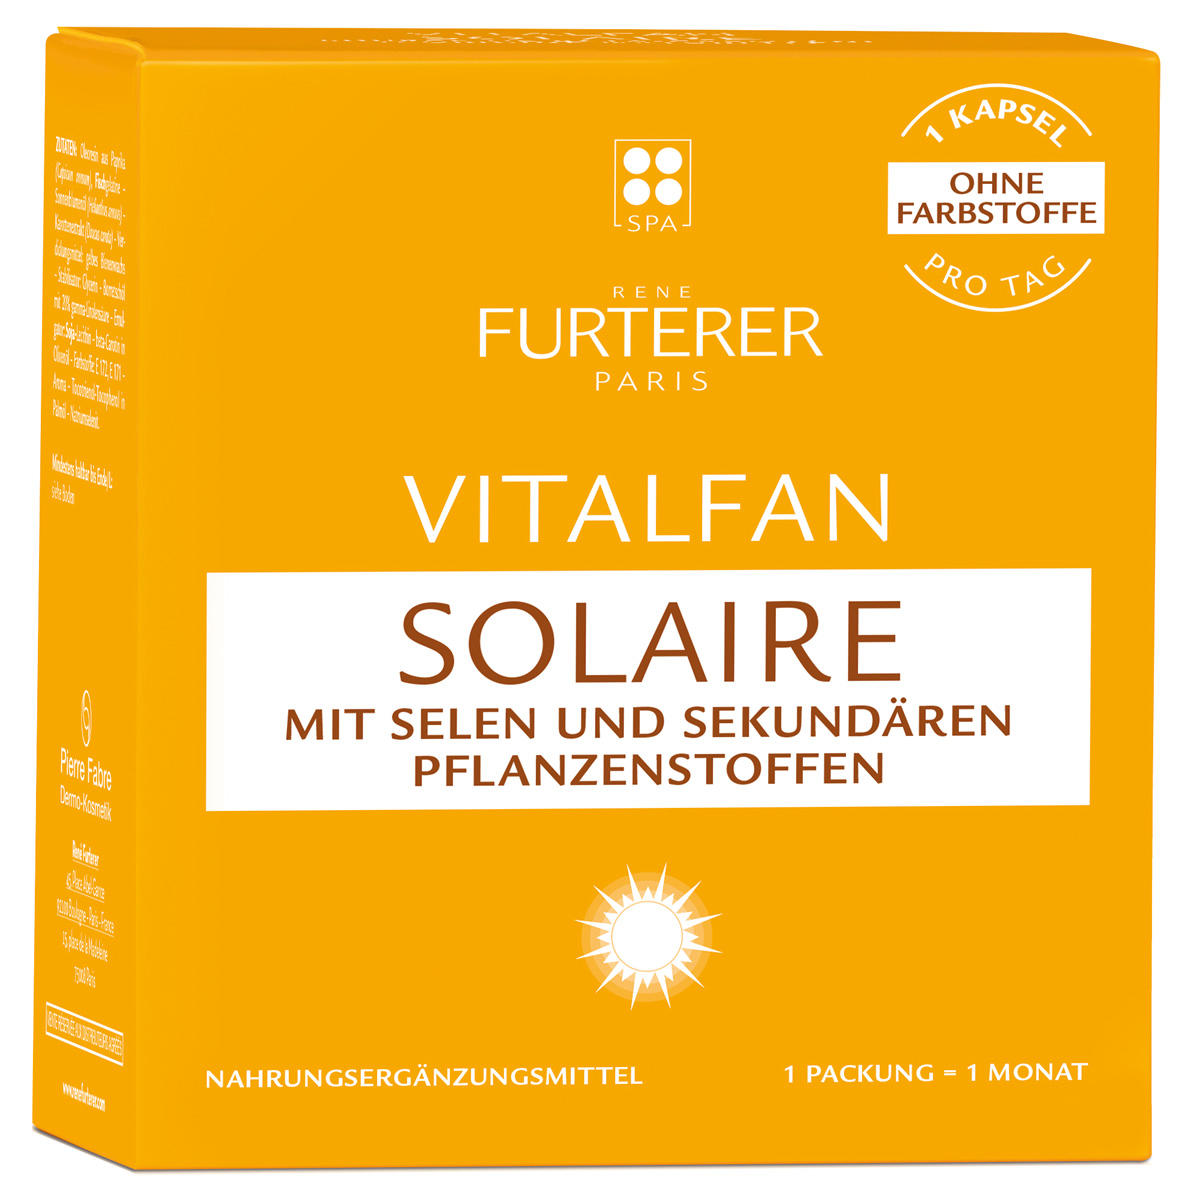 René Furterer Vitalfan Solaire 30 Kapseln pro Packung - 1